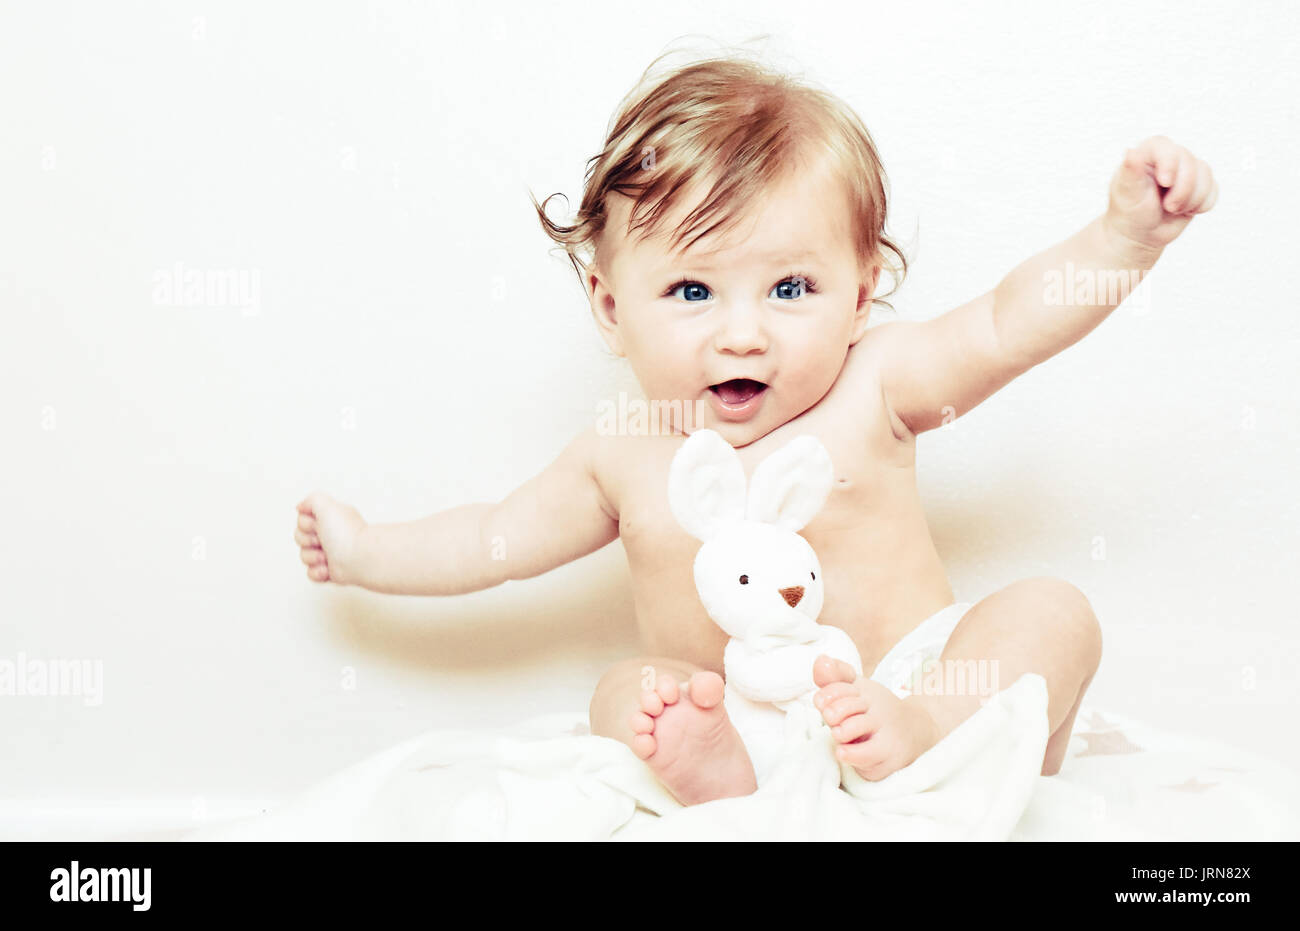 Ein glückliches Baby Mädchen Spaß am Lachen und Lächeln Stockfoto